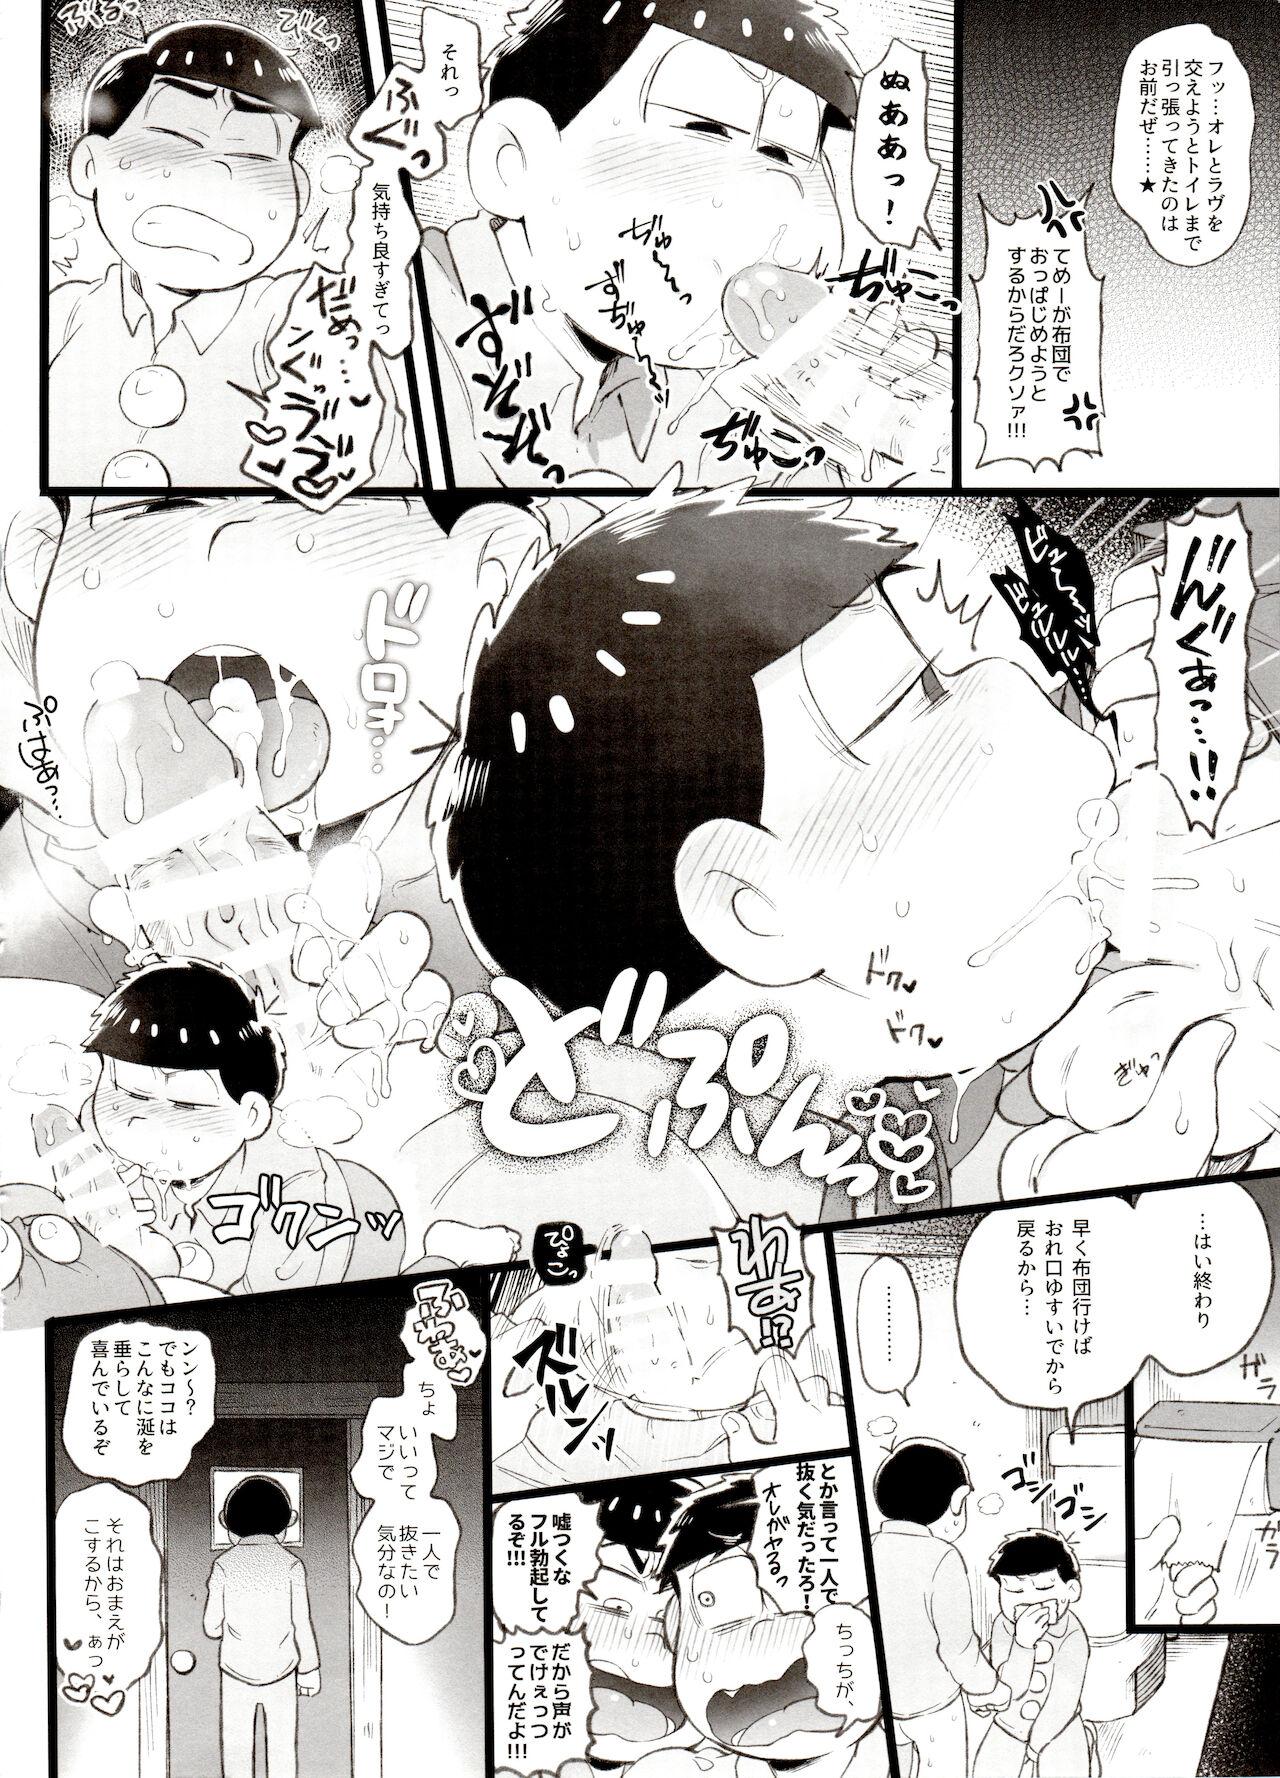 Sucking Cock Kahou 10-ji Yon no Omake Hon + Andante no Koufukuron Gojitsu Manga - Osomatsu-san Hunks - Page 3